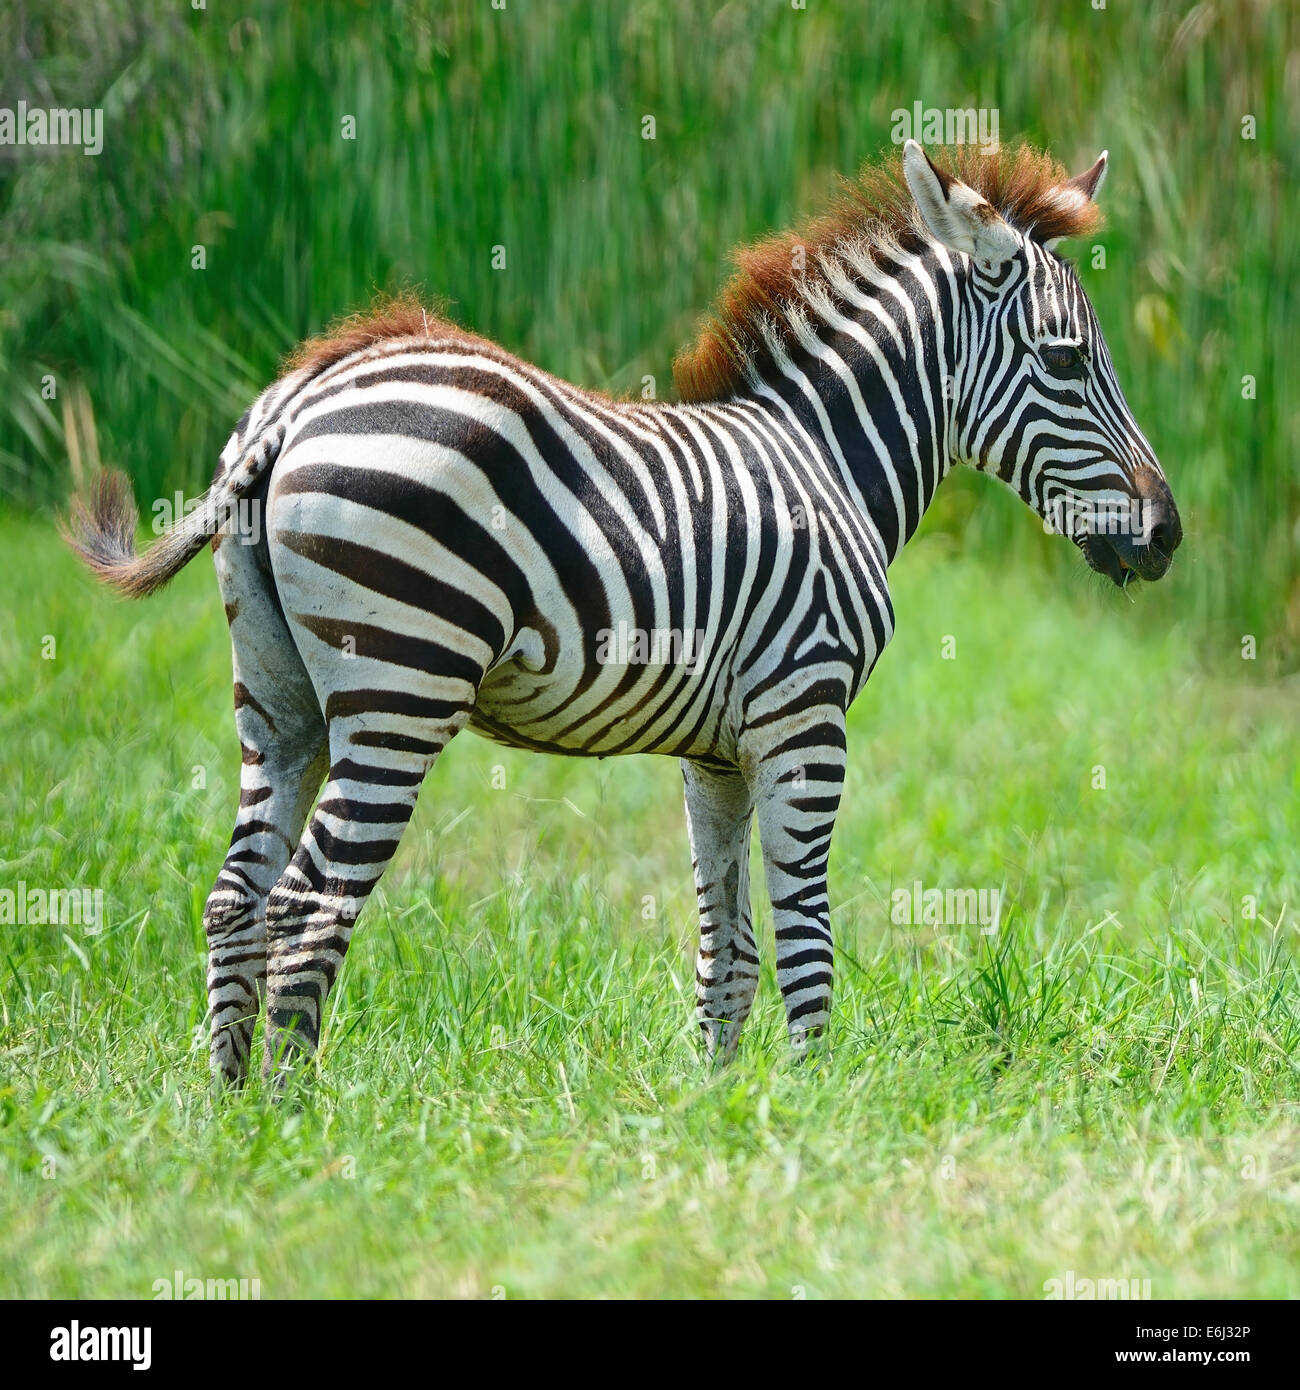 Common Zebra or Burchell's Zebra (Equus burchelli) Stock Photo